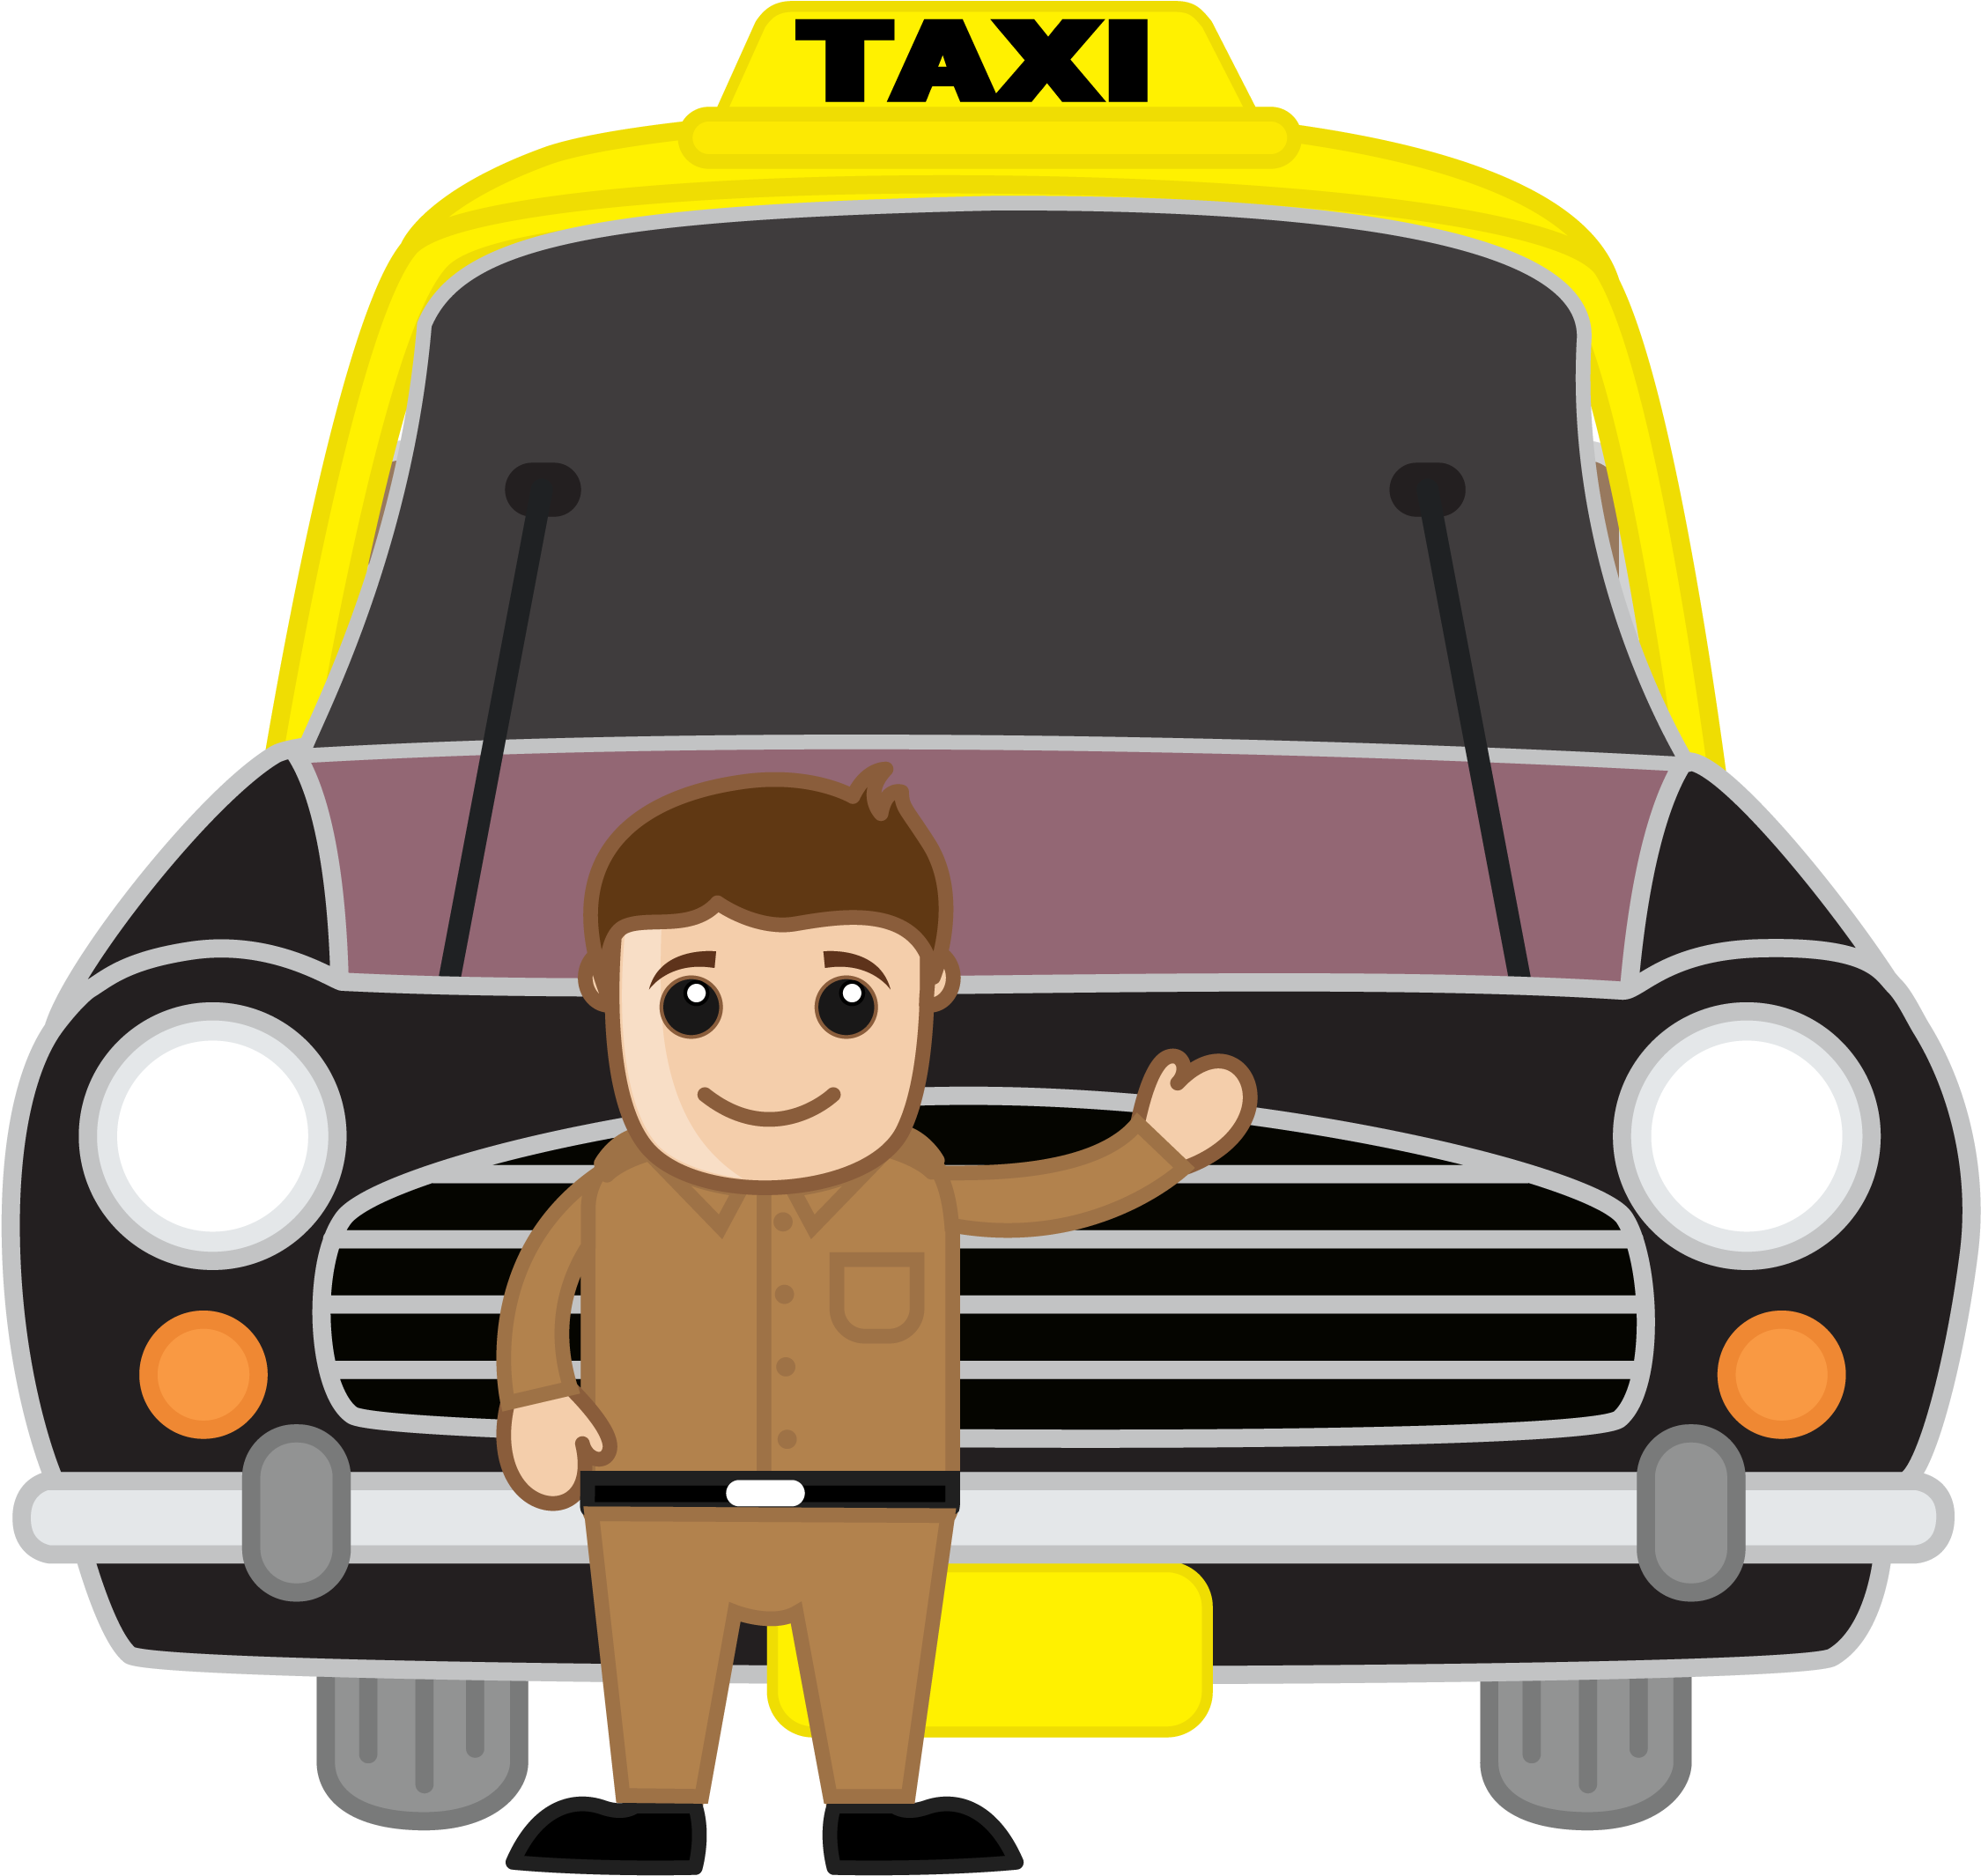 คนขับรถแท็กซี่ PNG Image HD